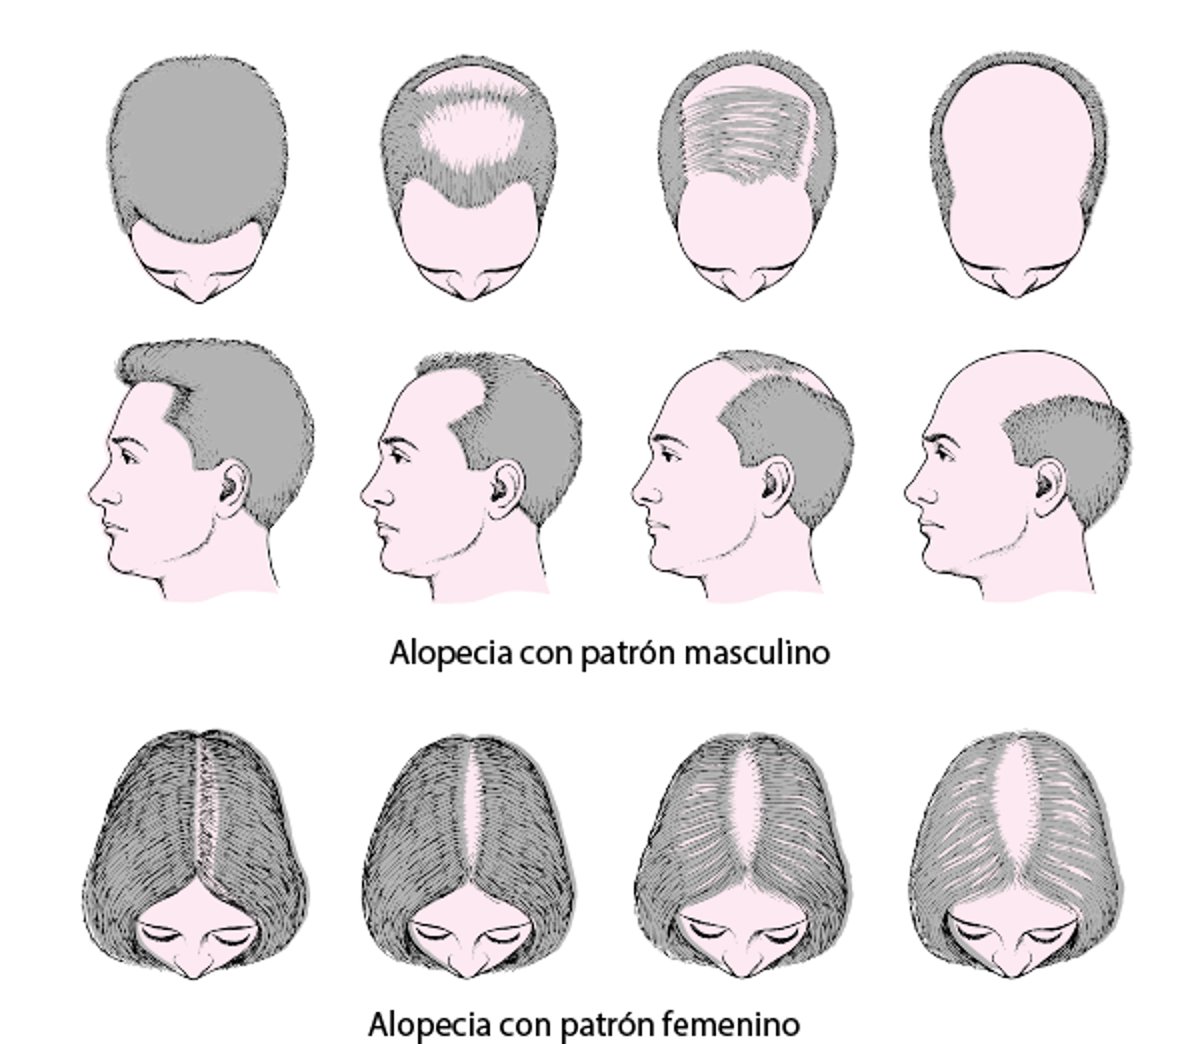 Patrones de pérdida del cabello